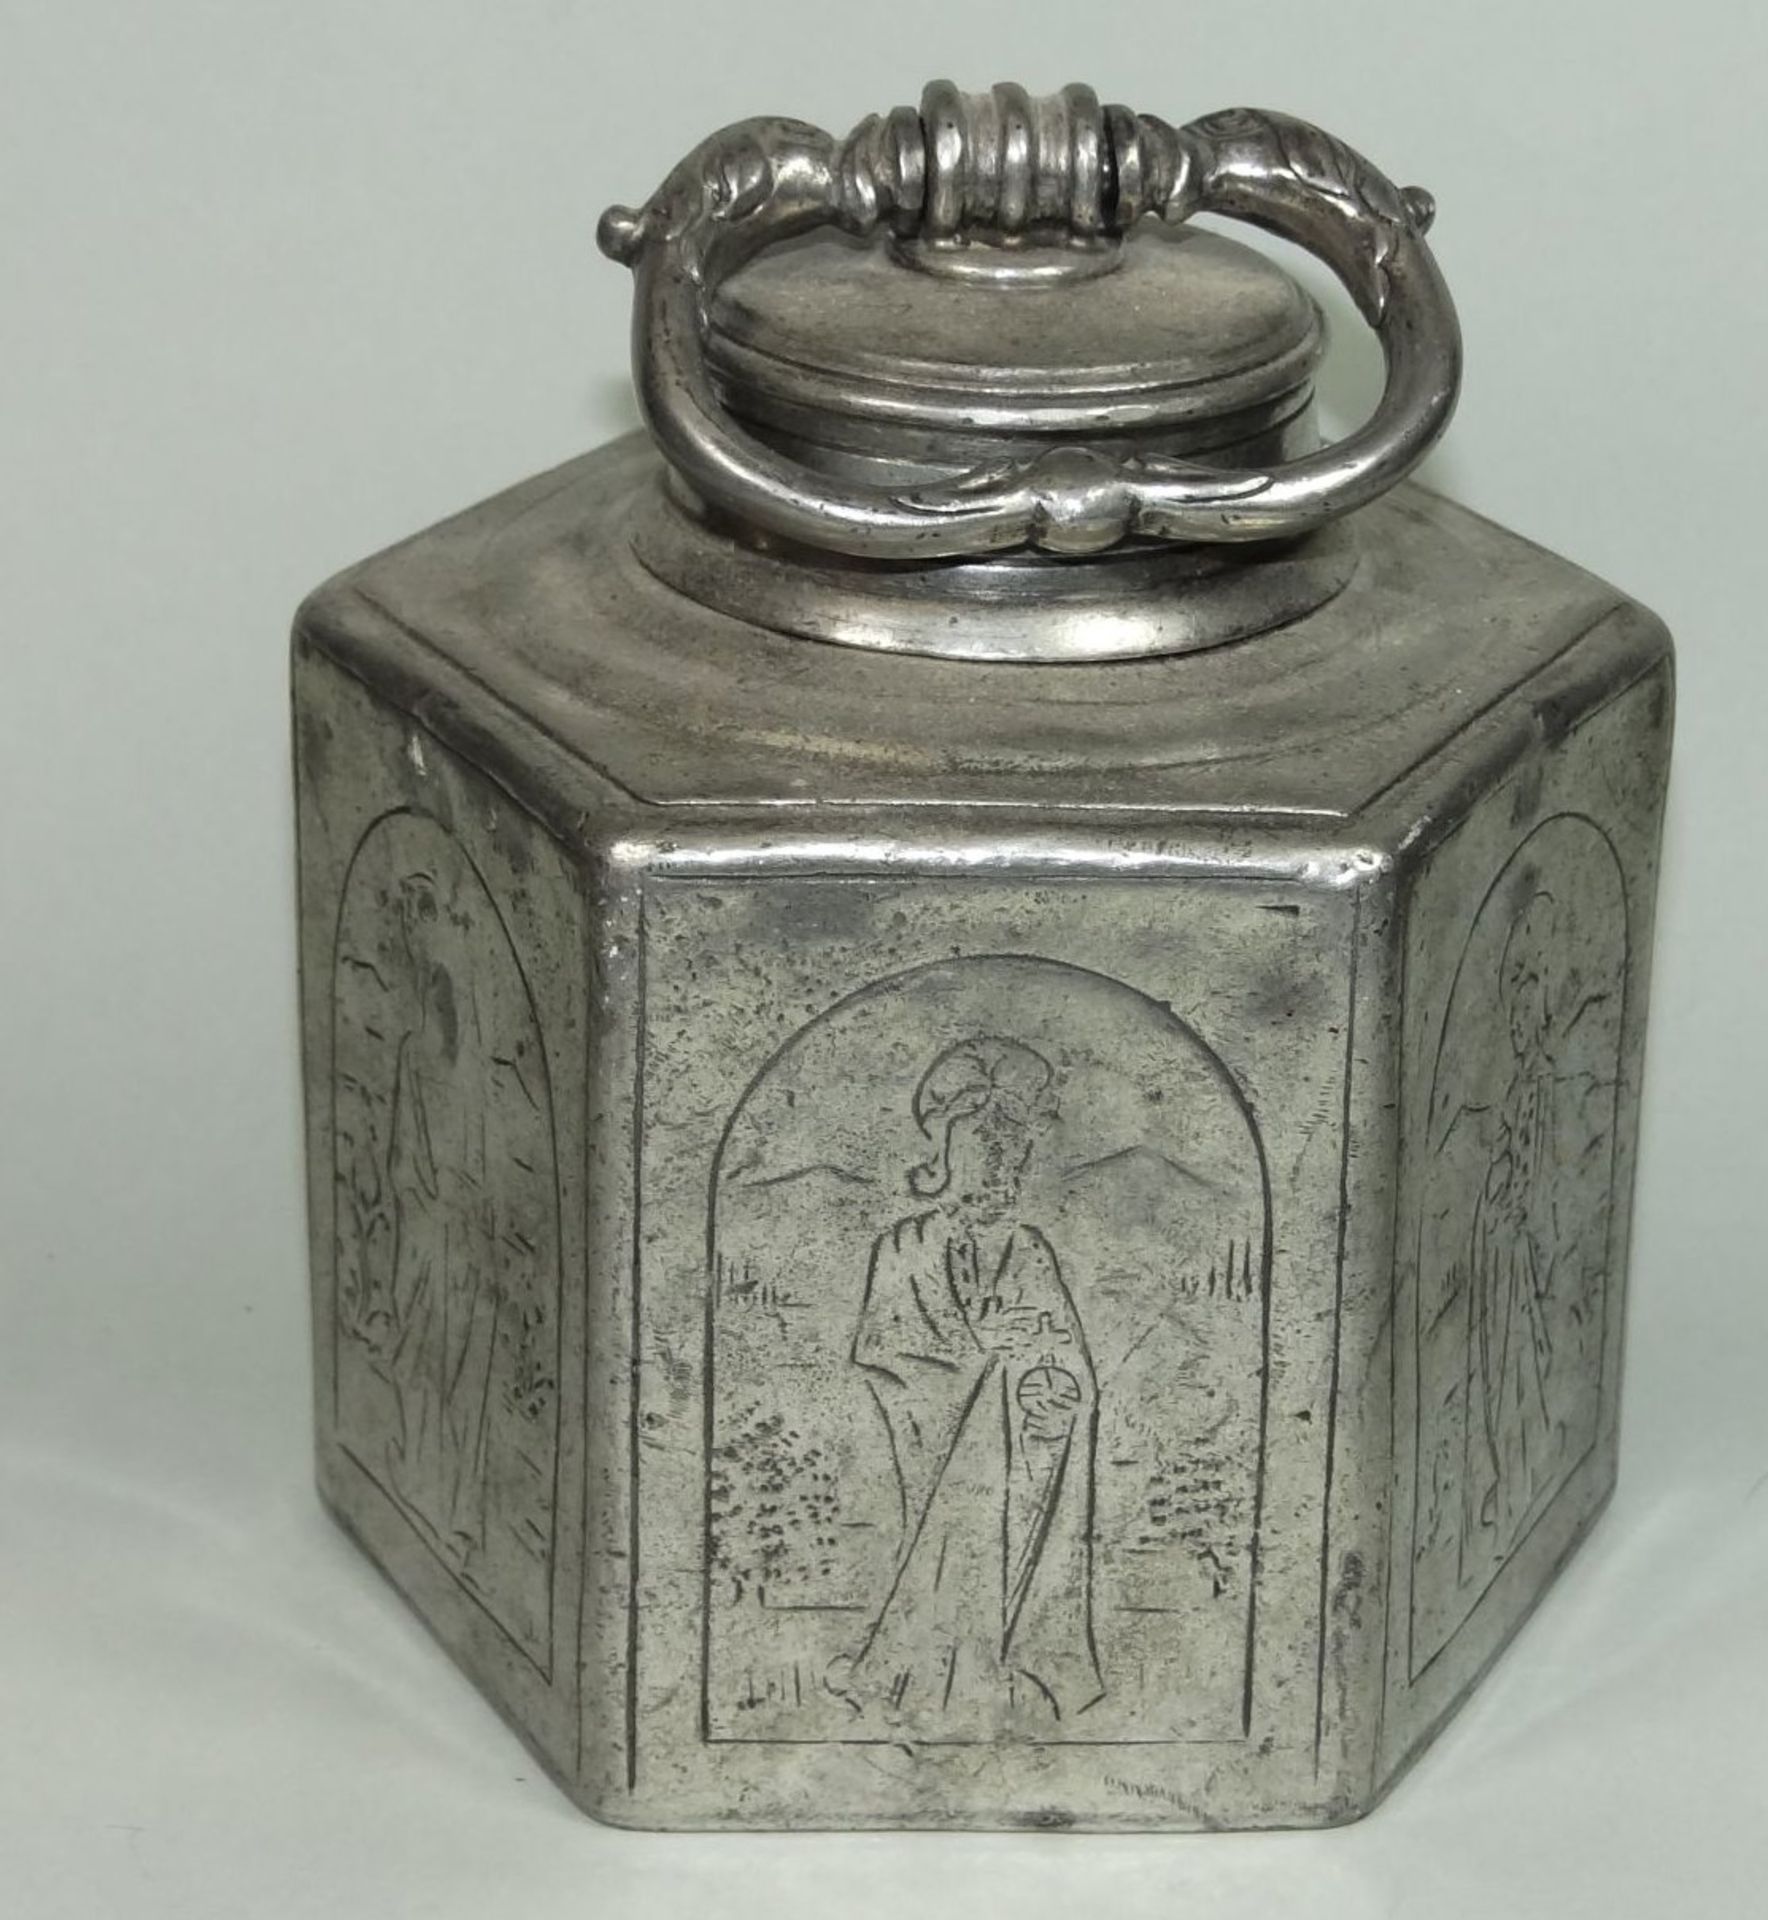 alte Zinn-Feldflasche, umlaufend Gravur, wohl Heilige, Engelmarke, Alters-u. Gebrauchsspuren, H-14 - Bild 2 aus 8